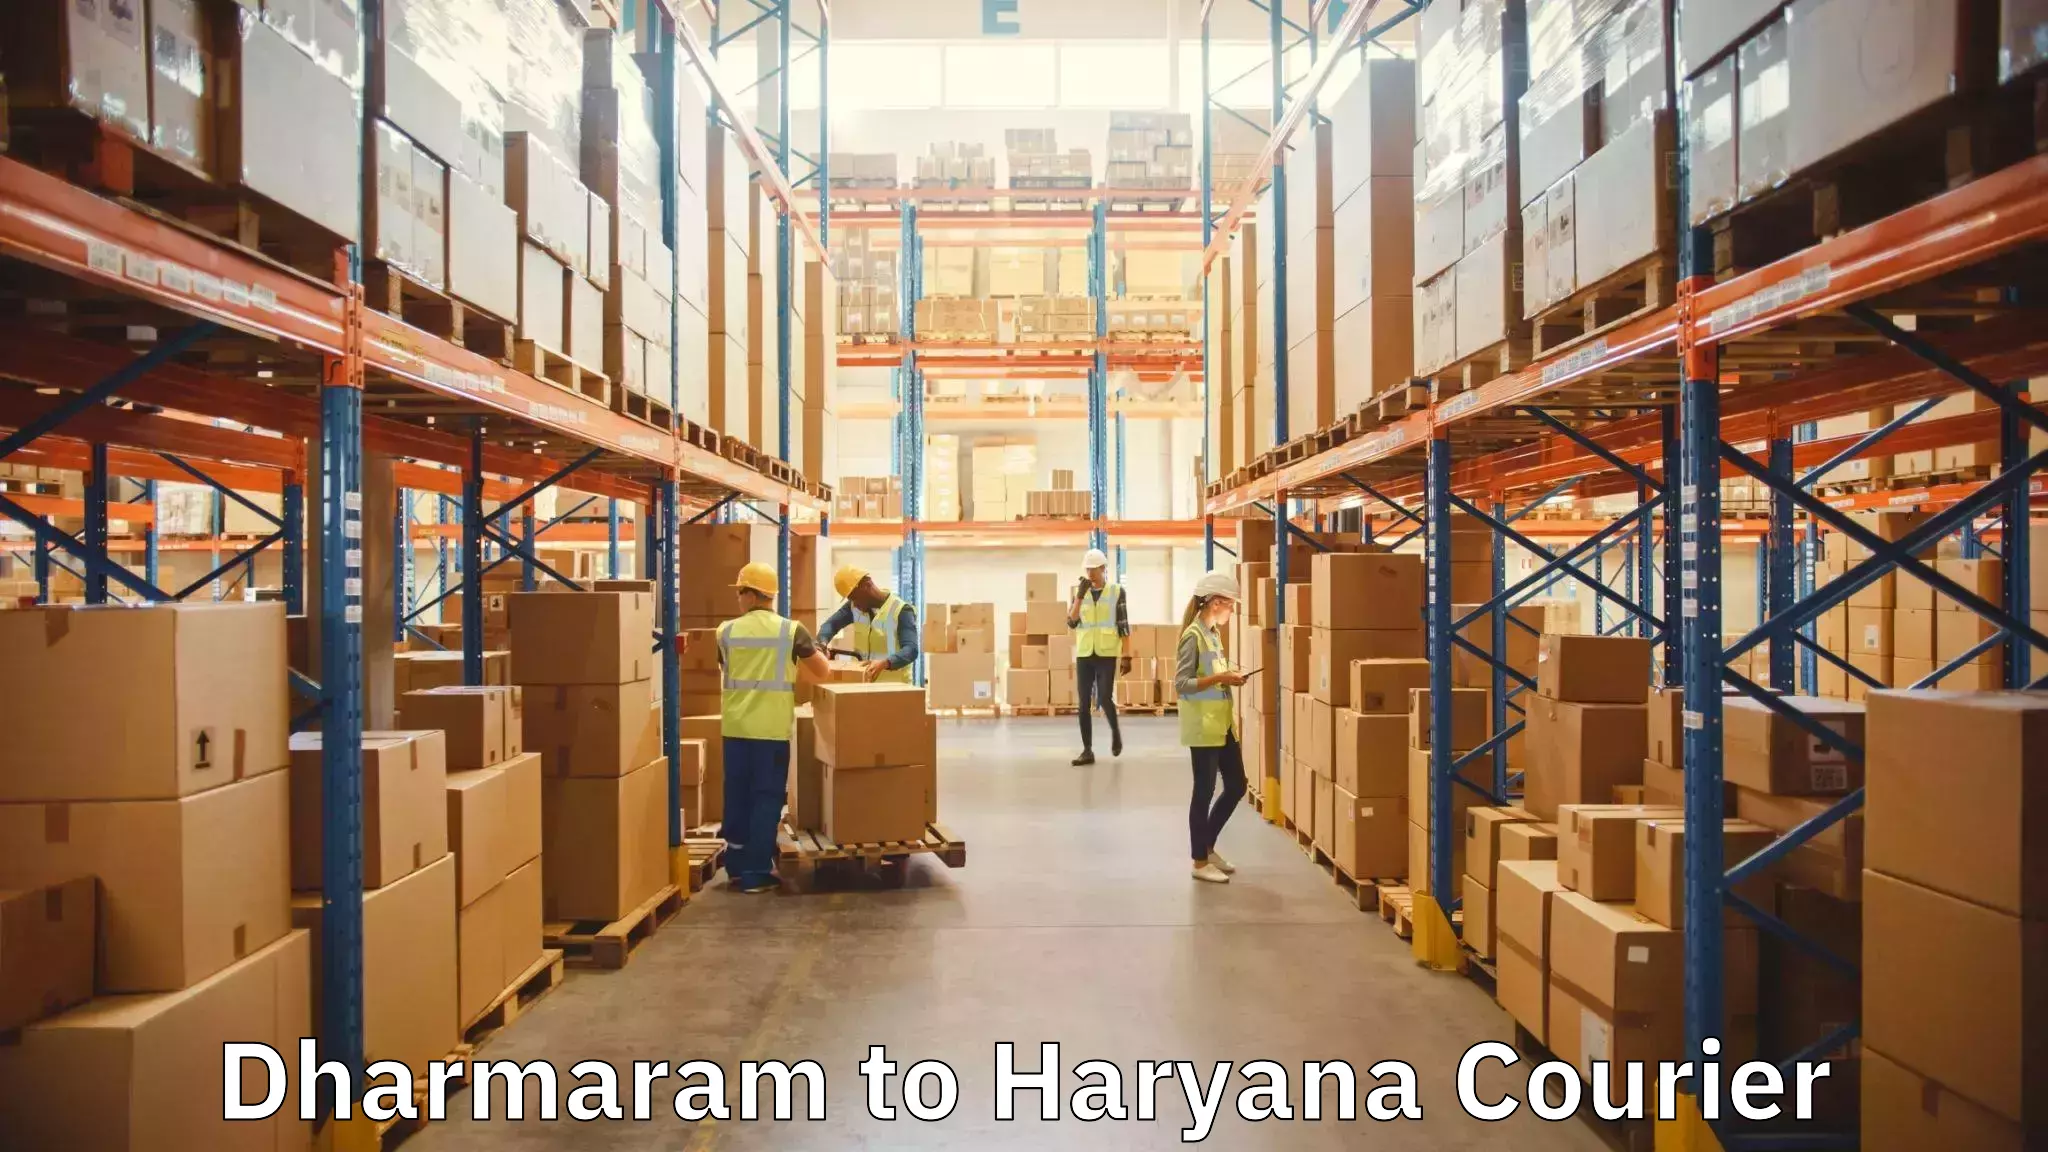 Home moving experts Dharmaram to Haryana